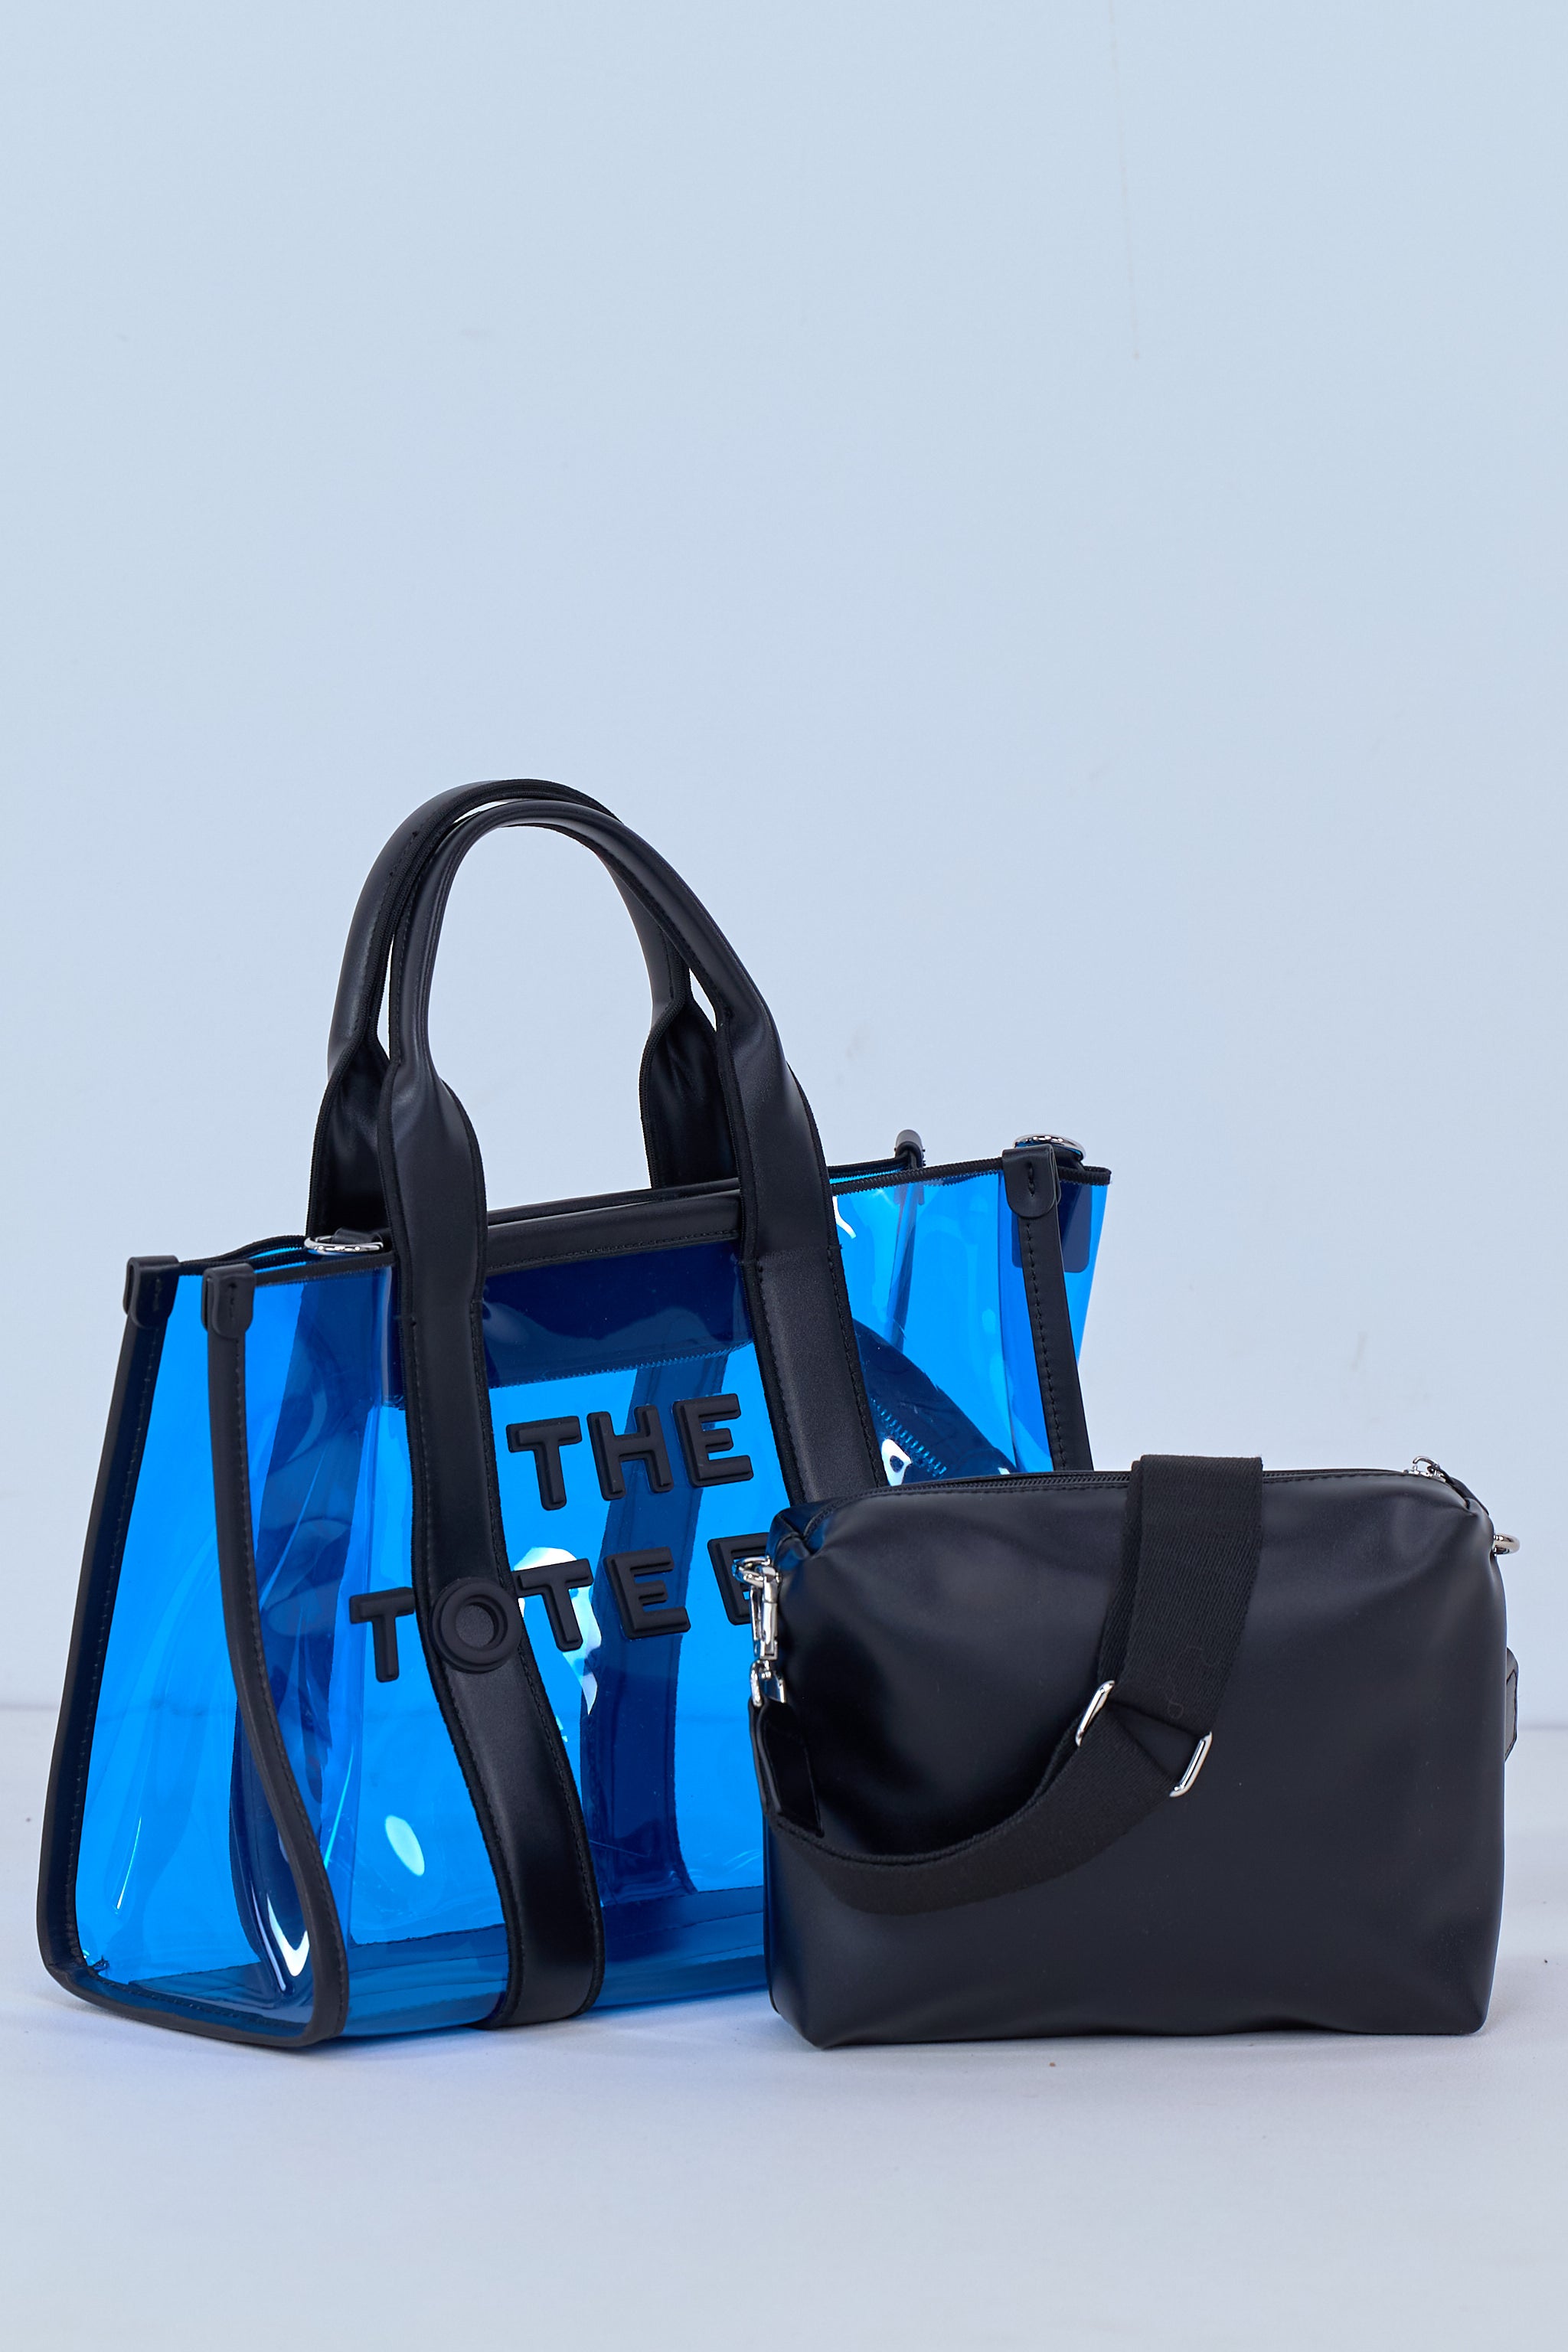 Hochwertige PVC Bag in Bag, blau